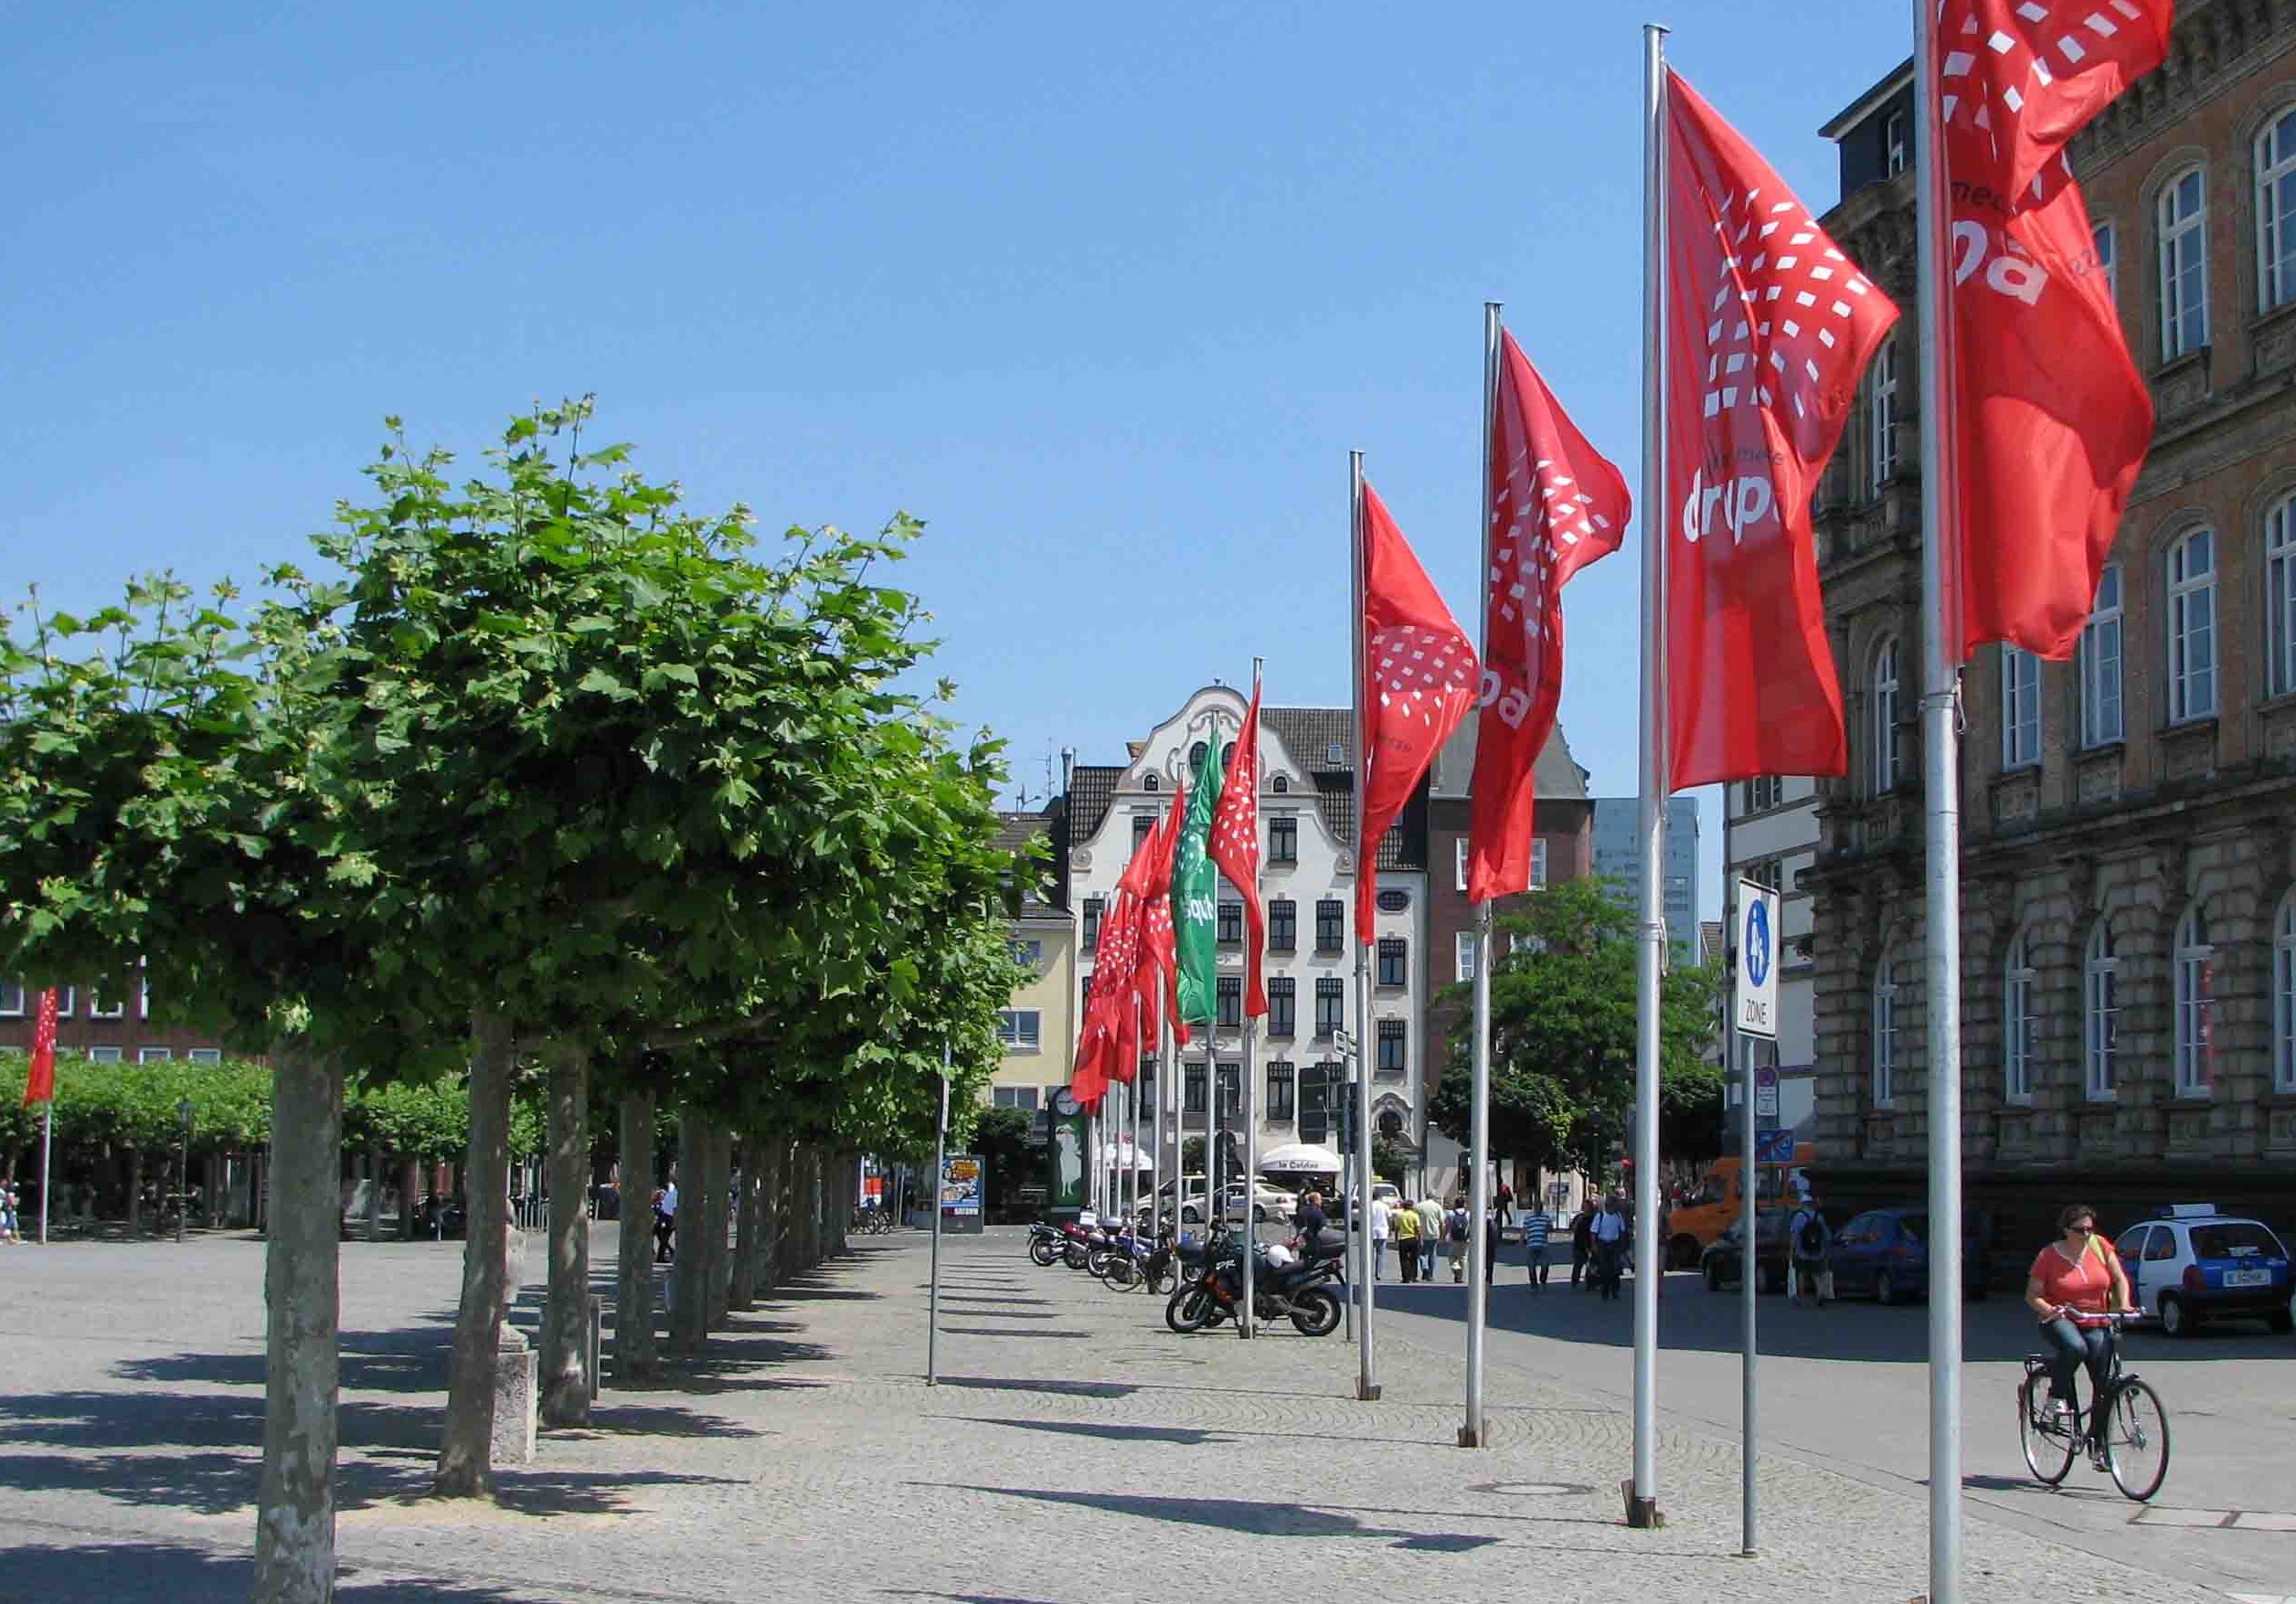 Dusseldorf Altstadt with DRUPA flags